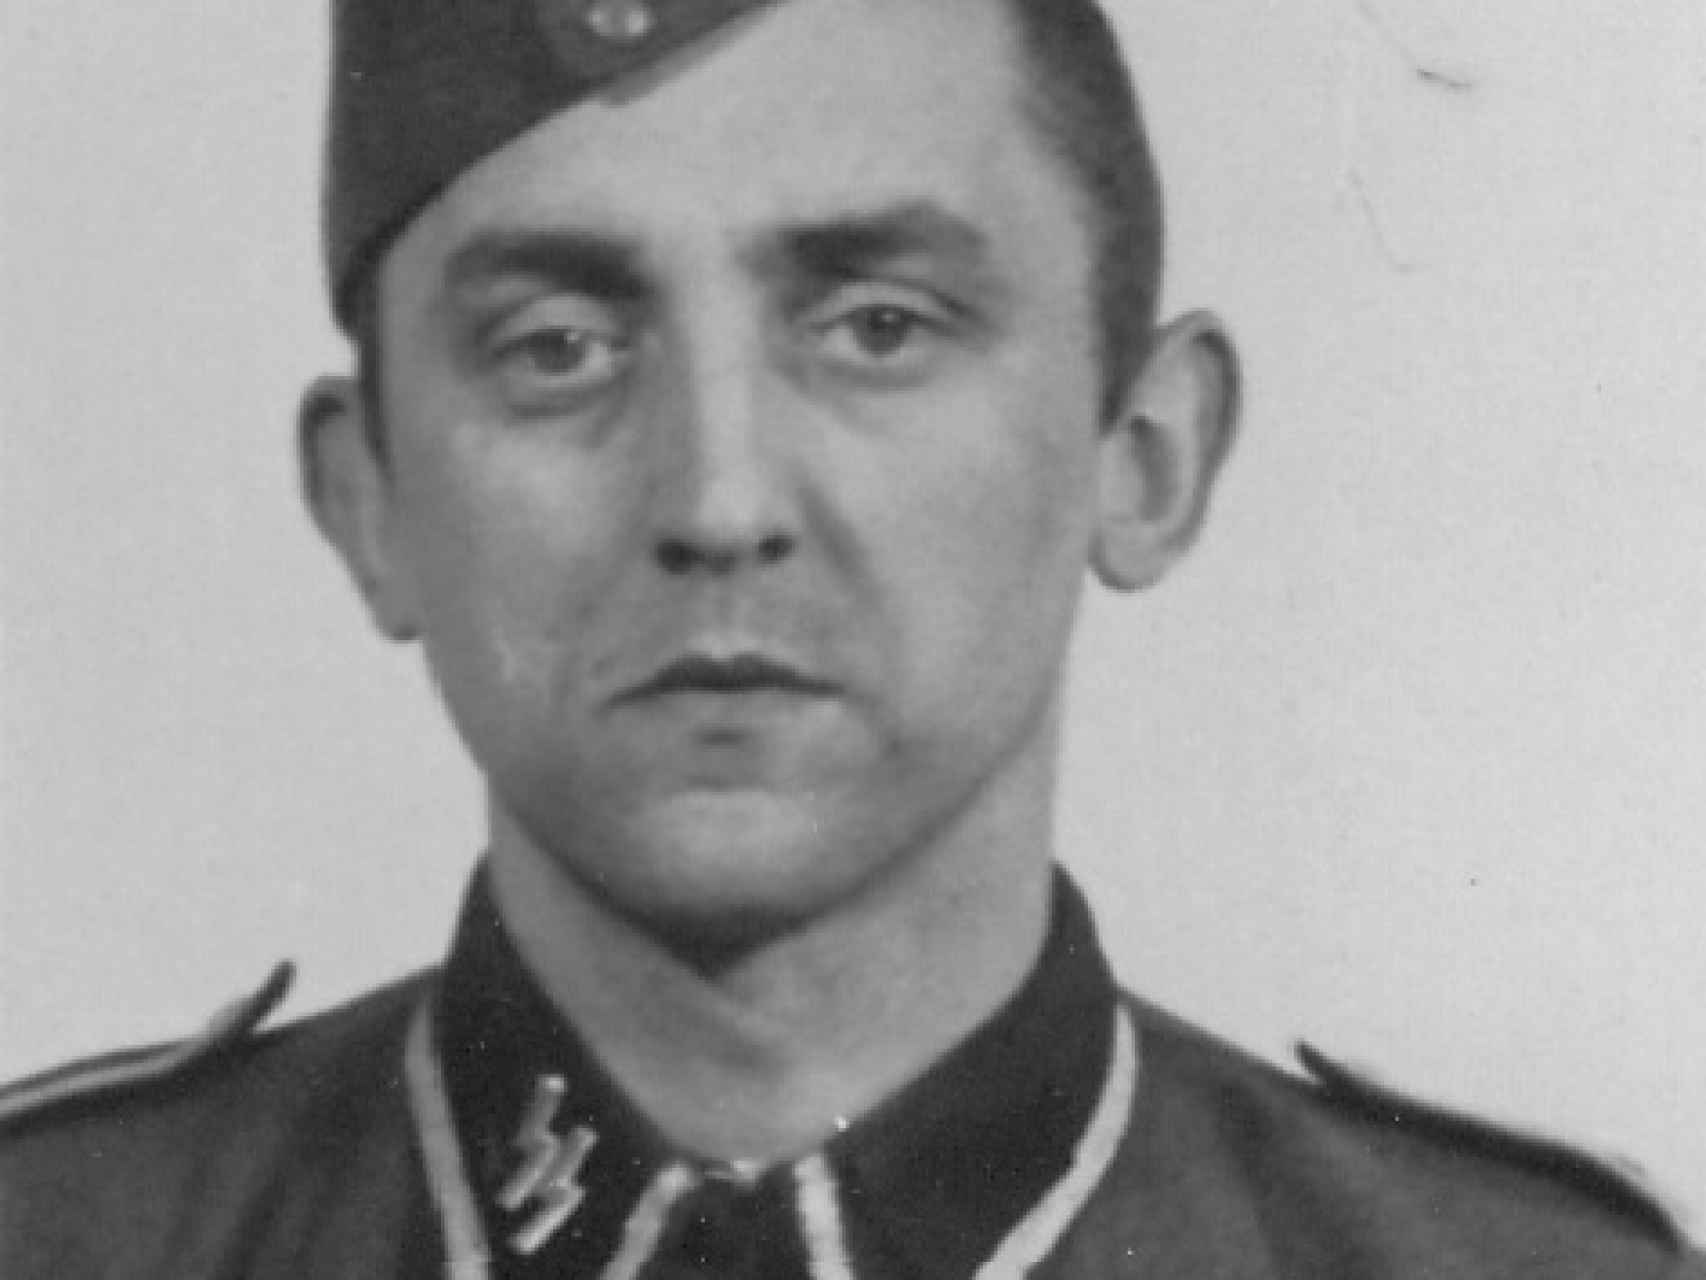 Hubert Z. trabajó en Auschwitz desde 1943 hasta 1945.